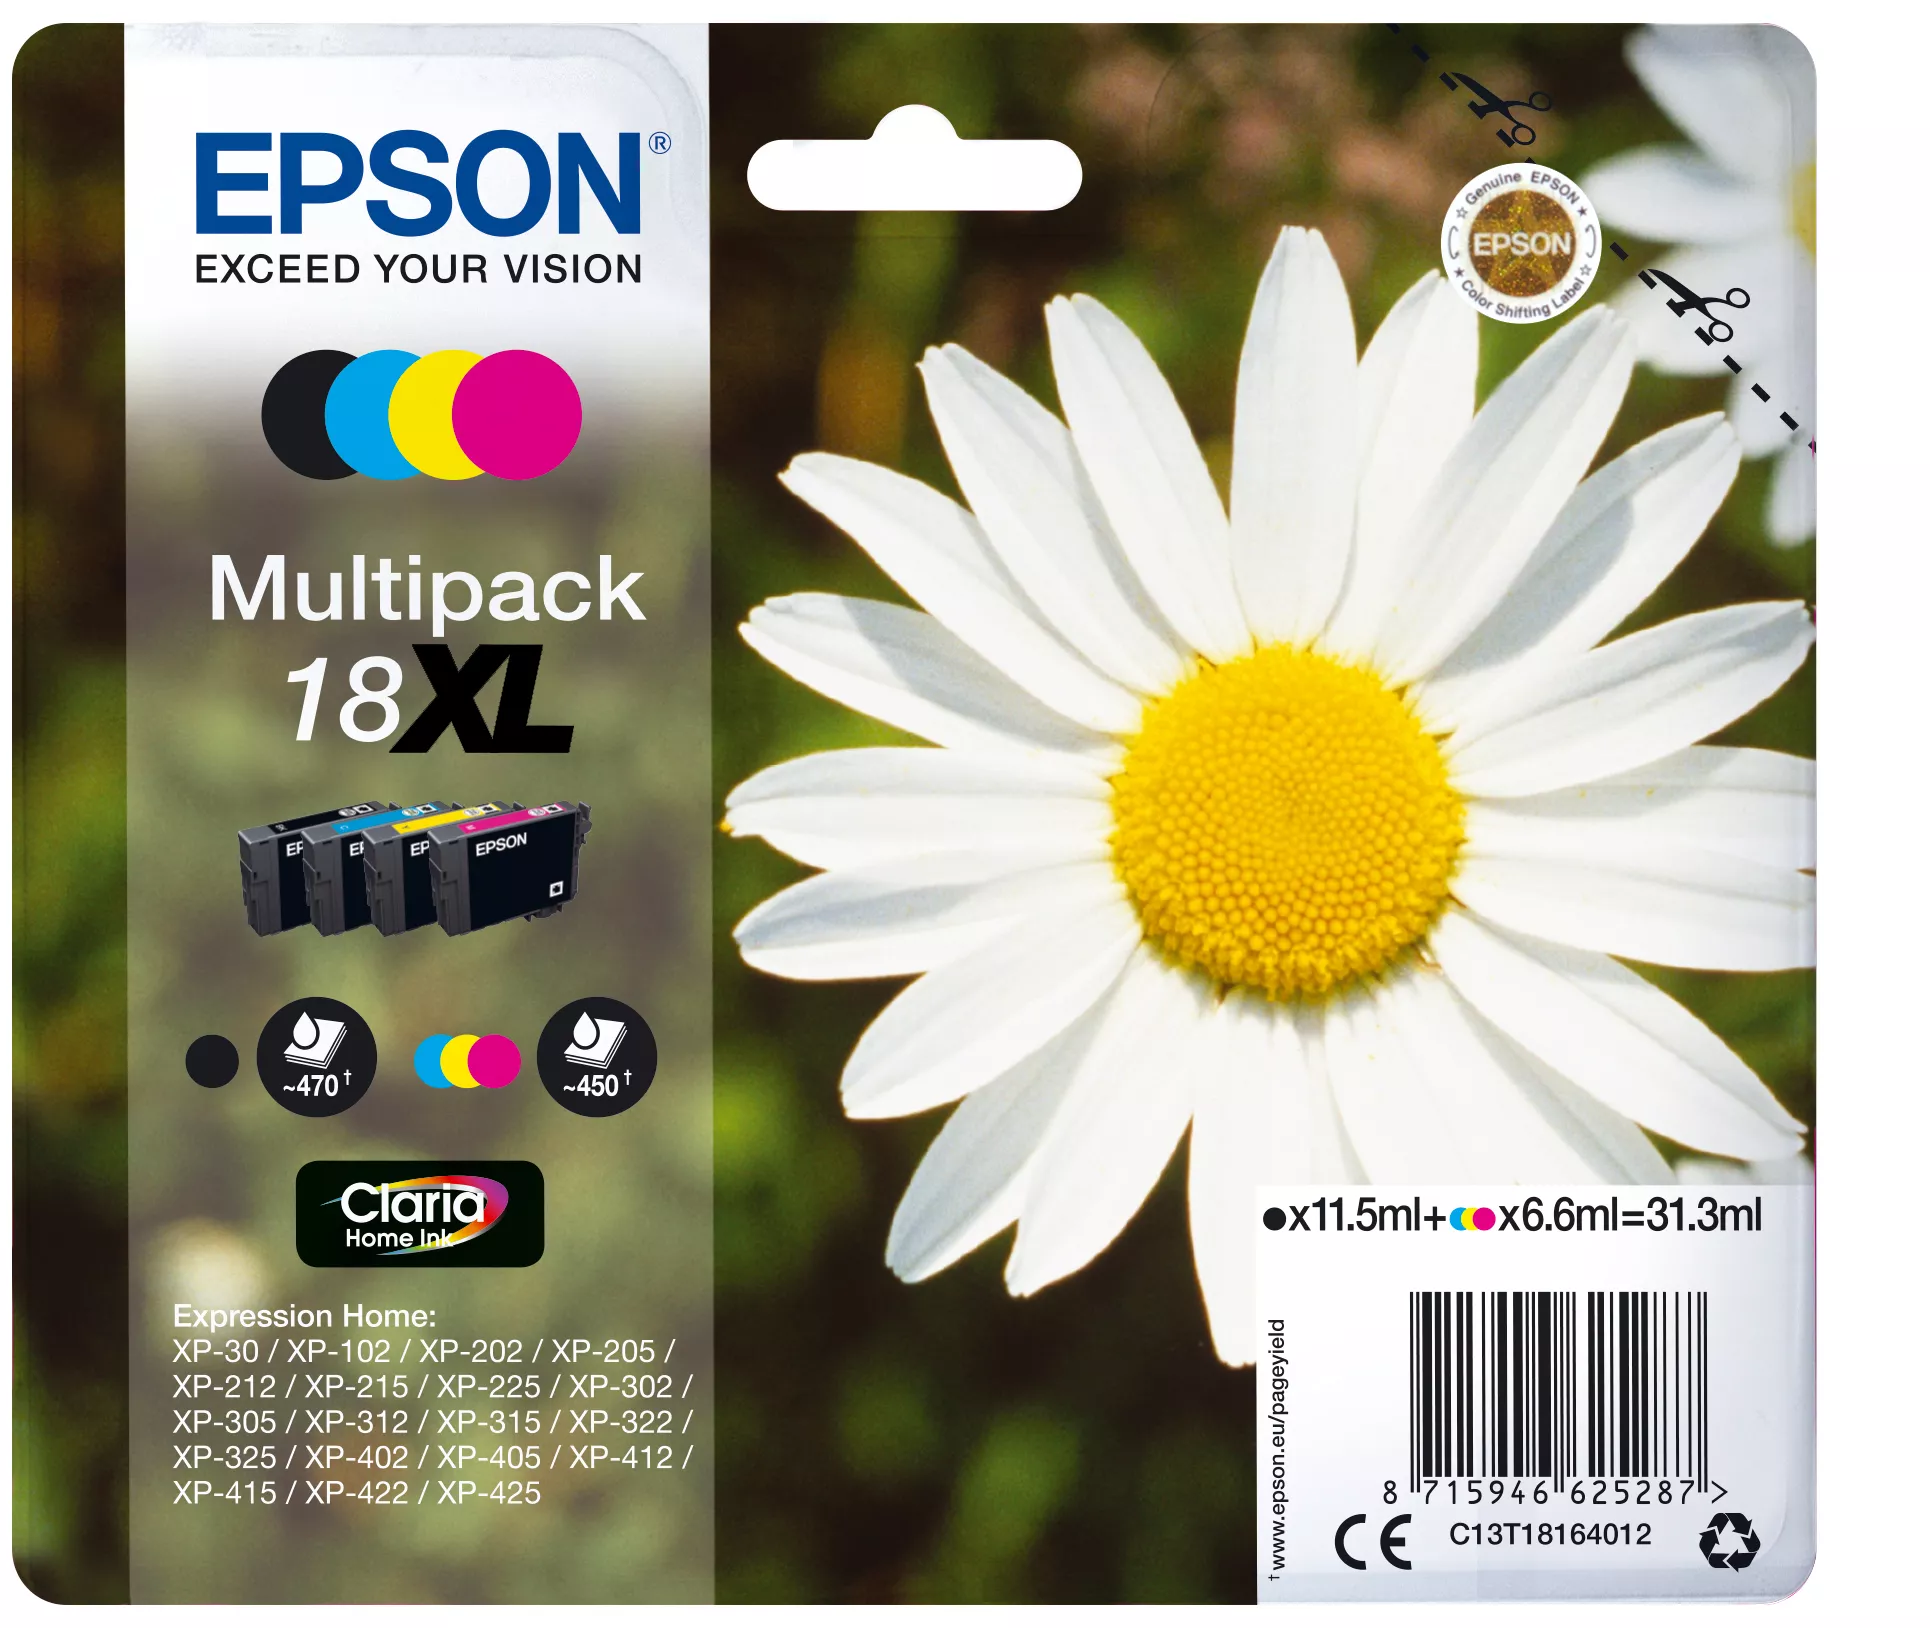 Vente EPSON 18XL cartouche encre noir et tricolore haute capacité au meilleur prix